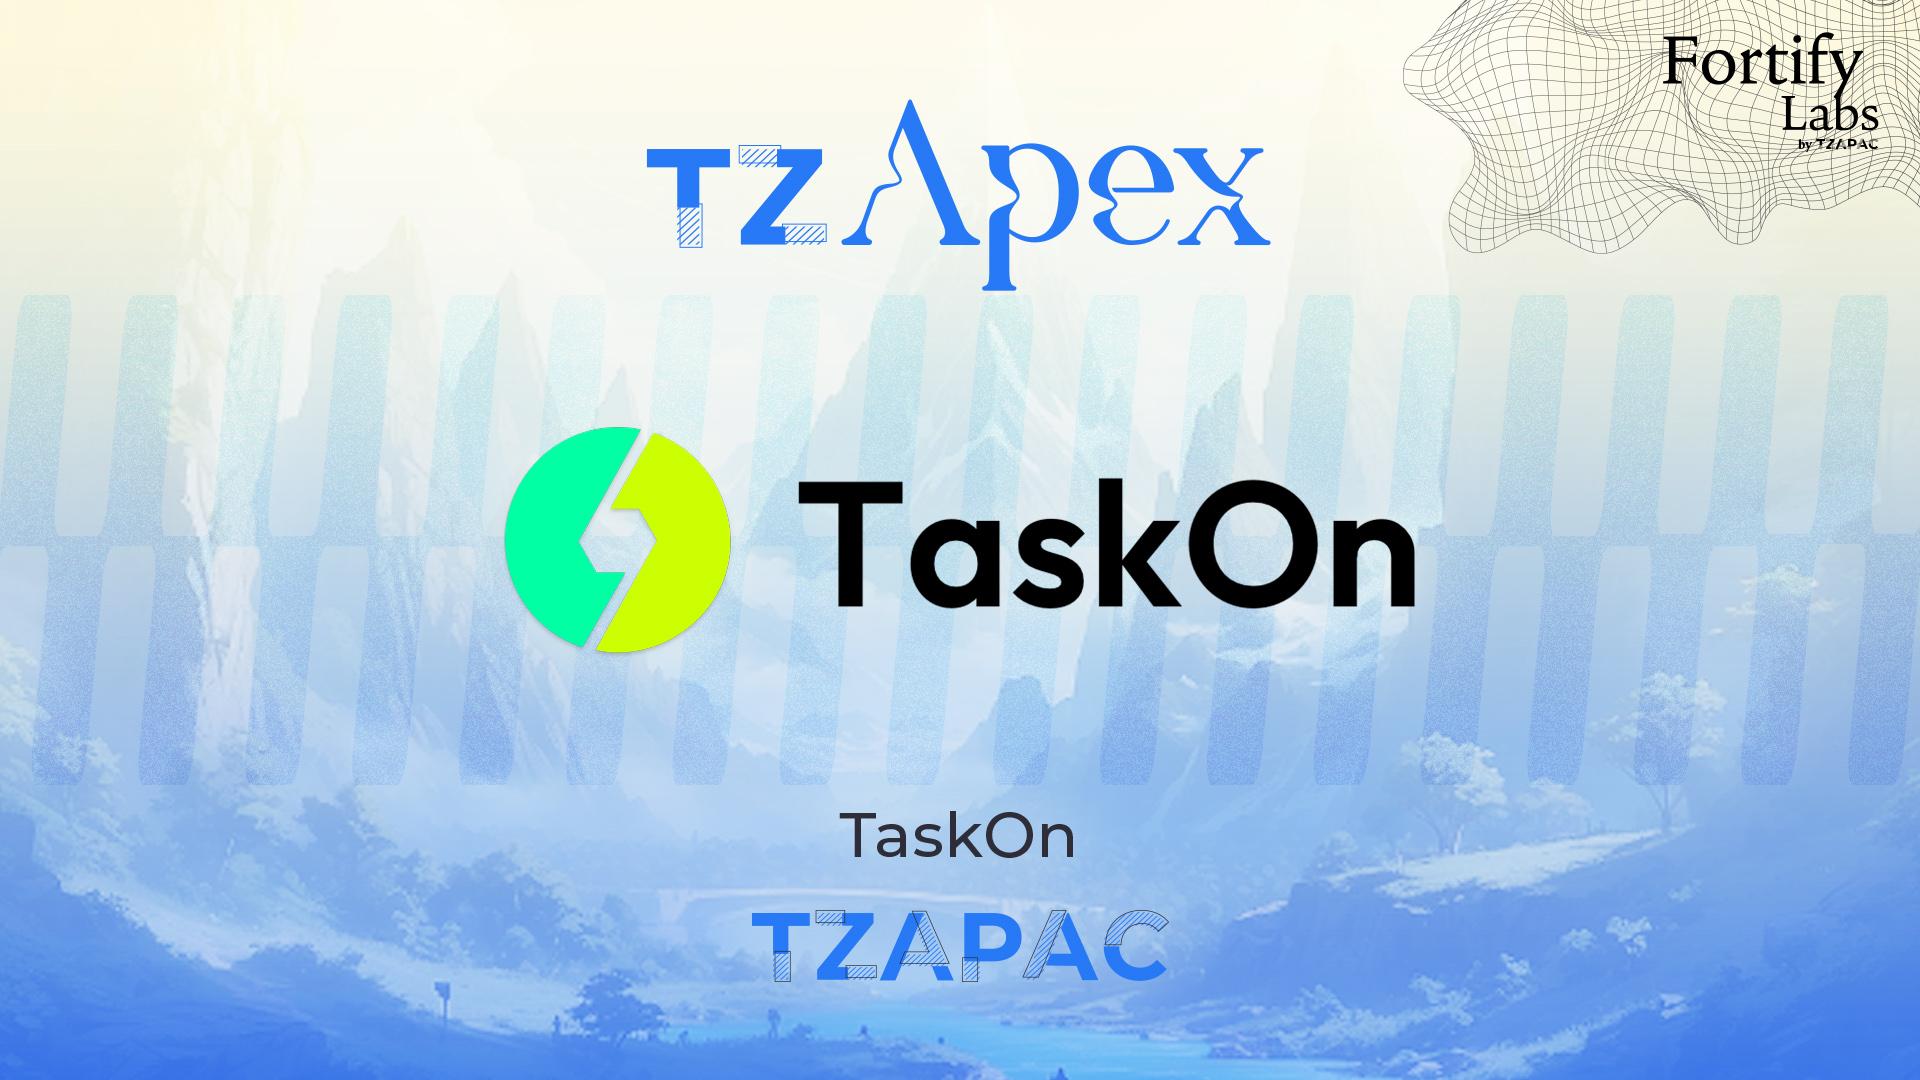 TaskOn